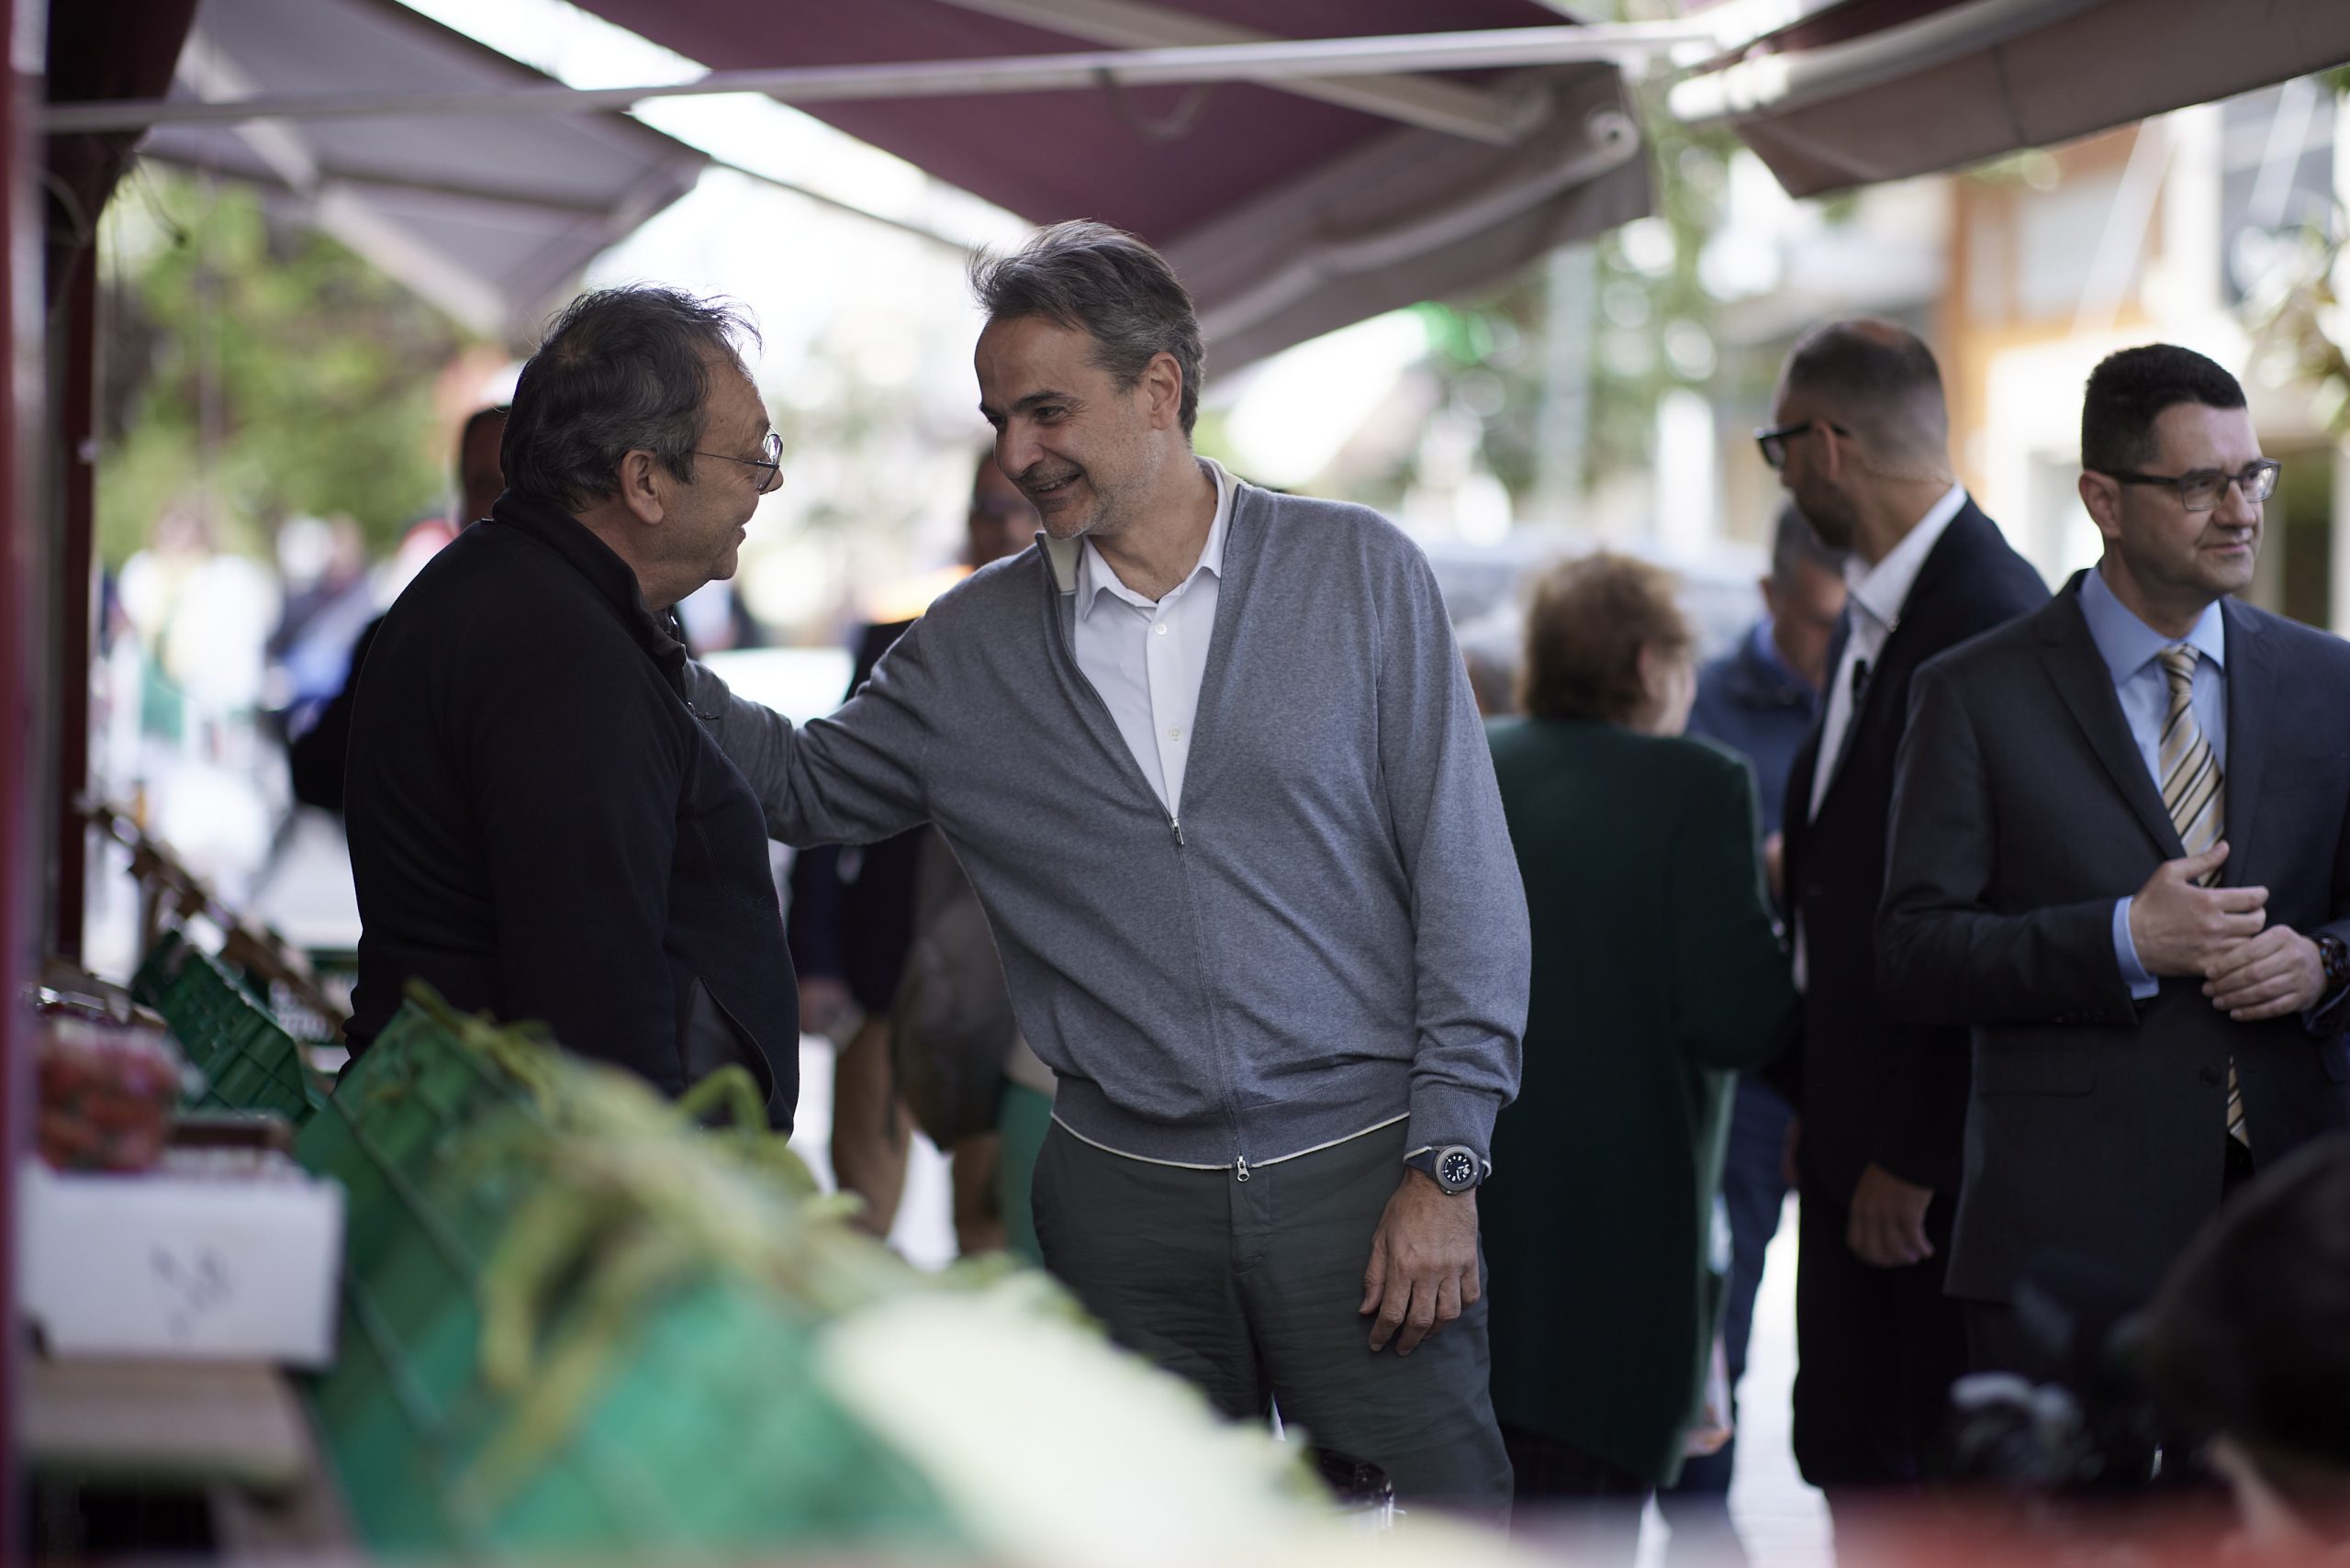 Ο πρωθυπουργός Κυριάκος Μητσοτάκης συνομιλεί με πολίτες κατά την διάρκεια της επίσκεψης του στη Θήβα (ΑΠΕ-ΜΠΕ)